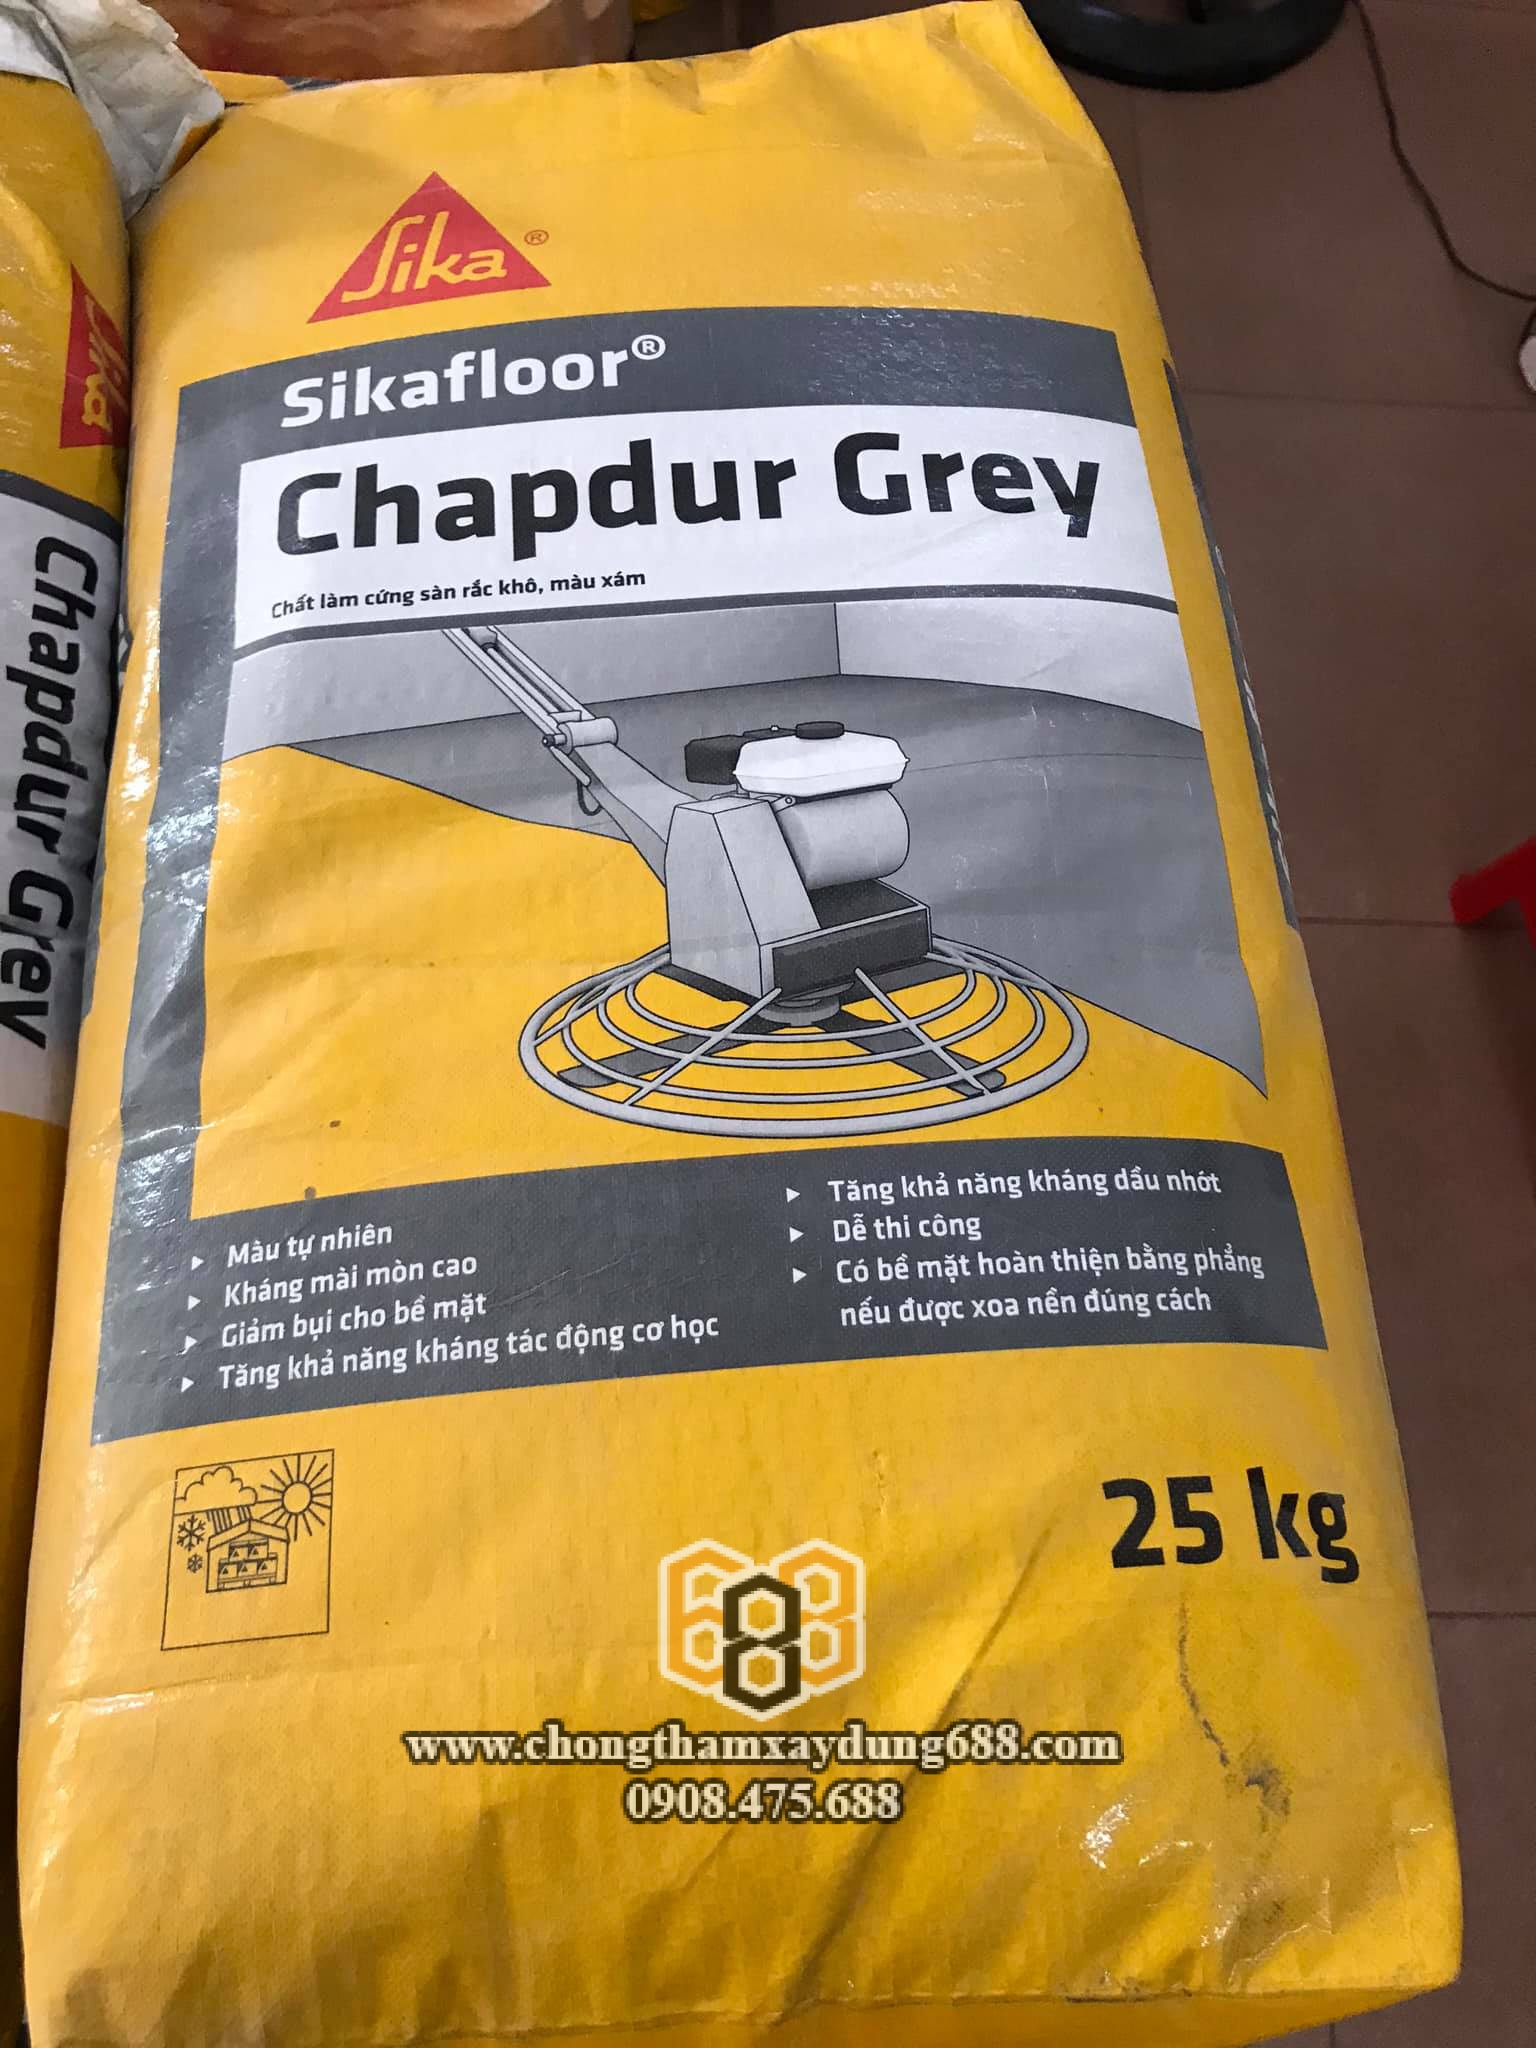 Bột xoa nền Sika Chapdur Grey: Sản phẩm bột xoa nền Sika Chapdur Grey giúp cho sàn nhà trở nên sang trọng và chất lượng hơn. Với màu xám trang nhã, sản phẩm này mang lại cho người sử dụng cảm giác ấm cúng nhưng không kém phần chuyên nghiệp. Hãy để sàn nhà của bạn trở nên đẳng cấp hơn với Sika Chapdur Grey.